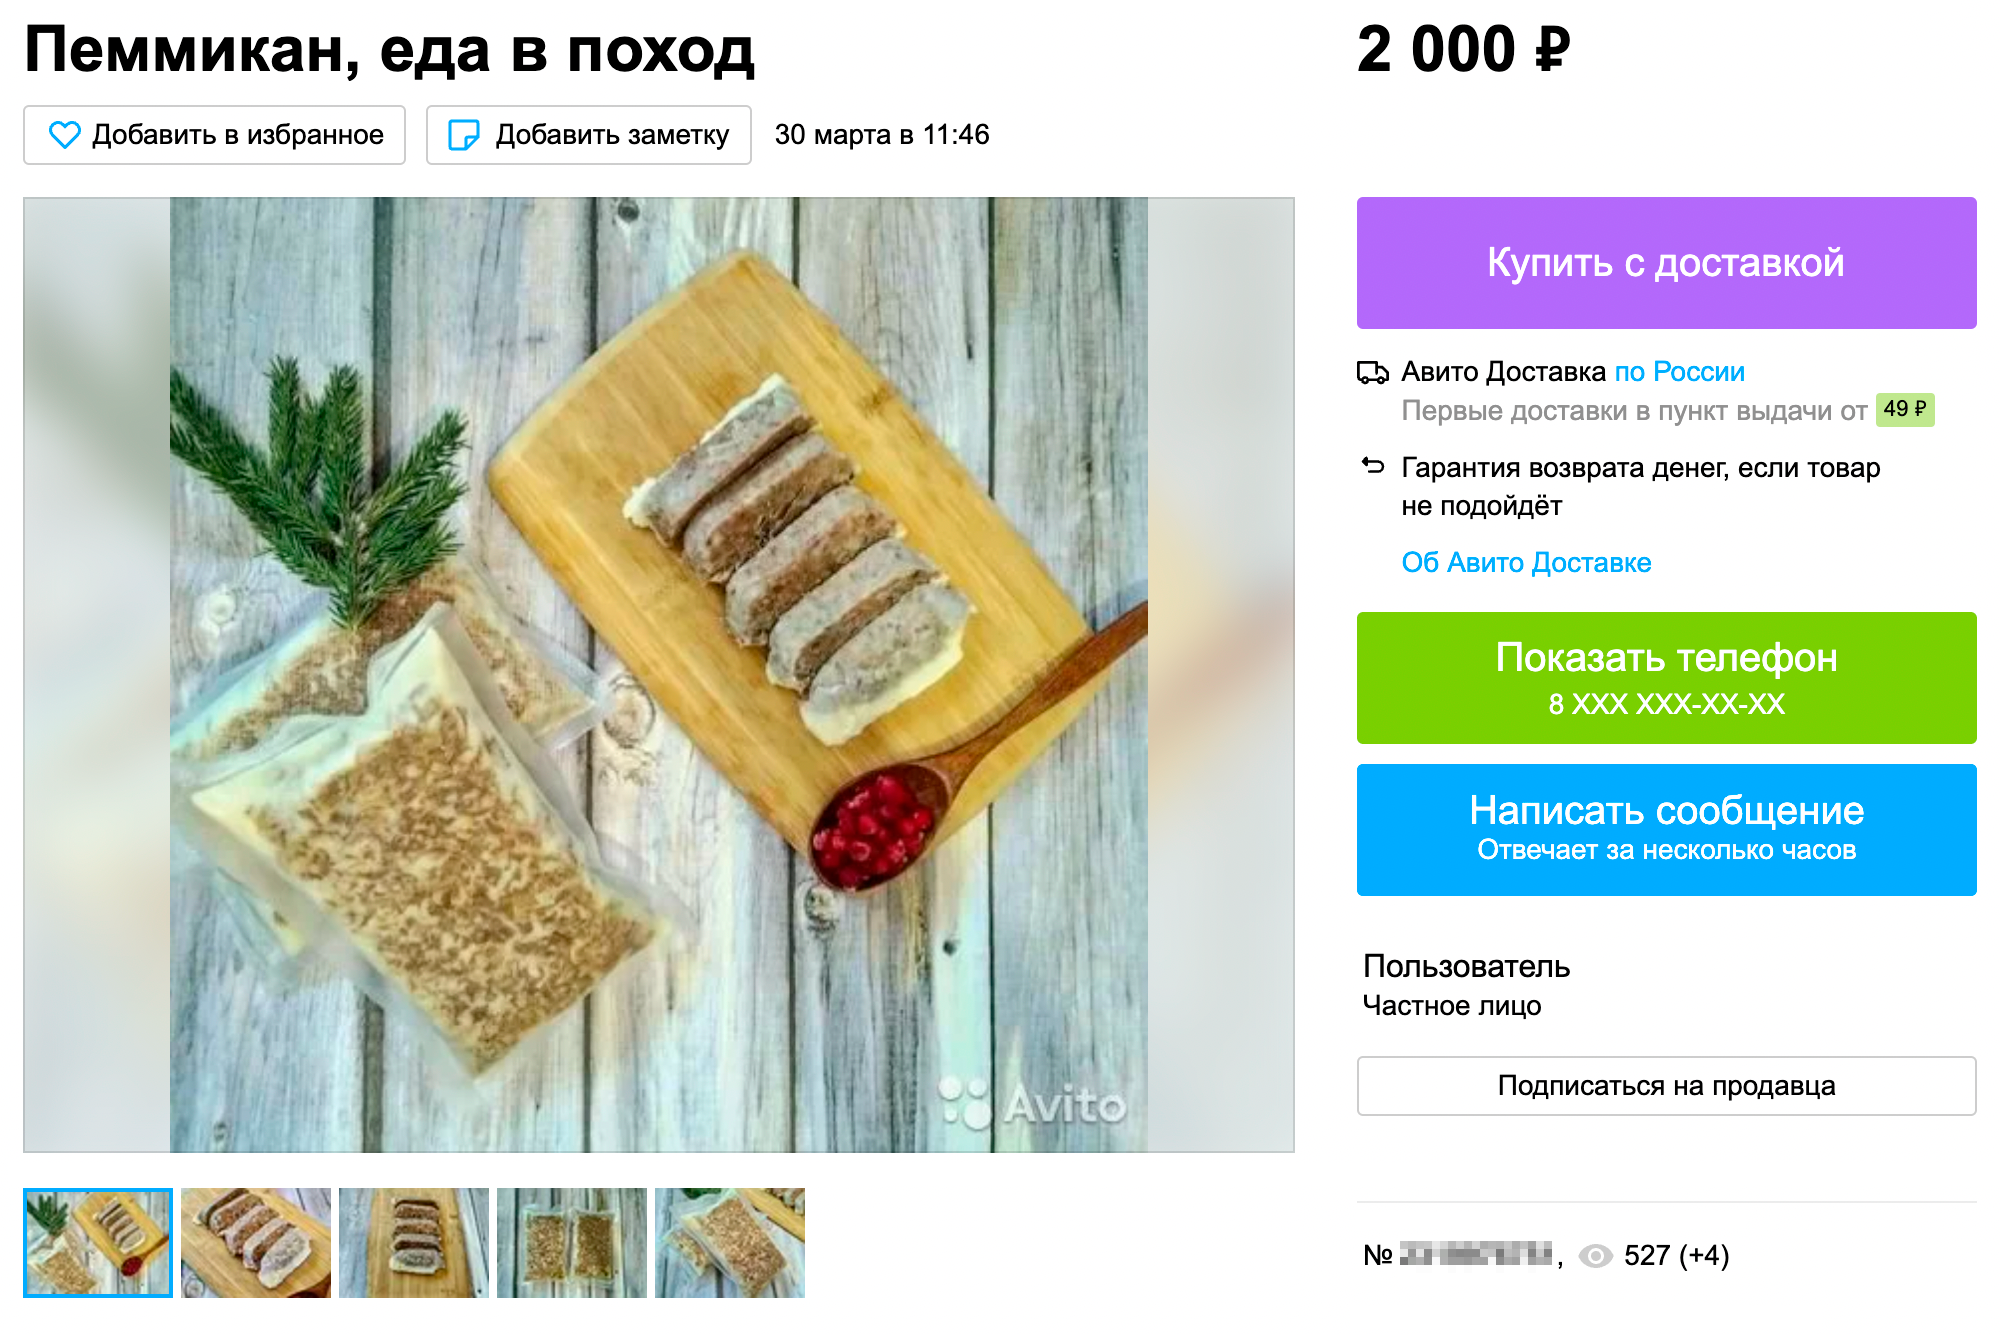 Пеммикан можно расфасовать в пакеты нужного объема и не нести лишнюю упаковку. Источник: avito.ru